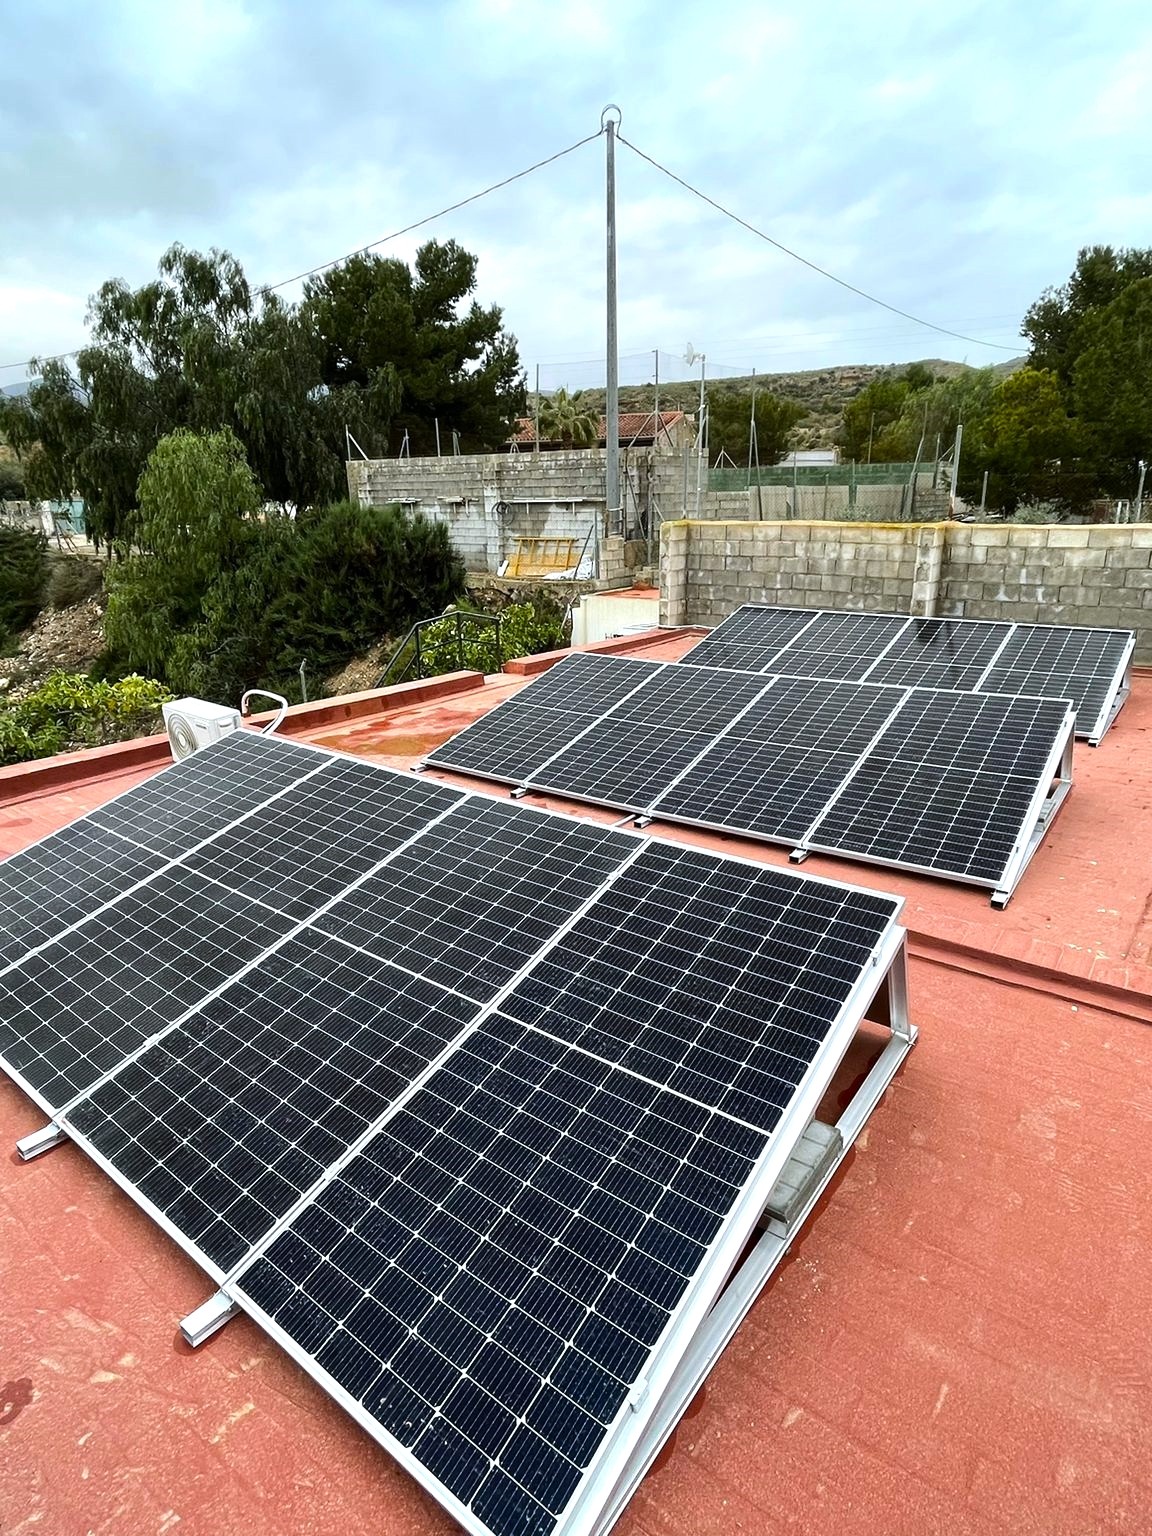 12X 455 wp Paneles Solares, Crevillente, Alicante (Sistema híbrido)